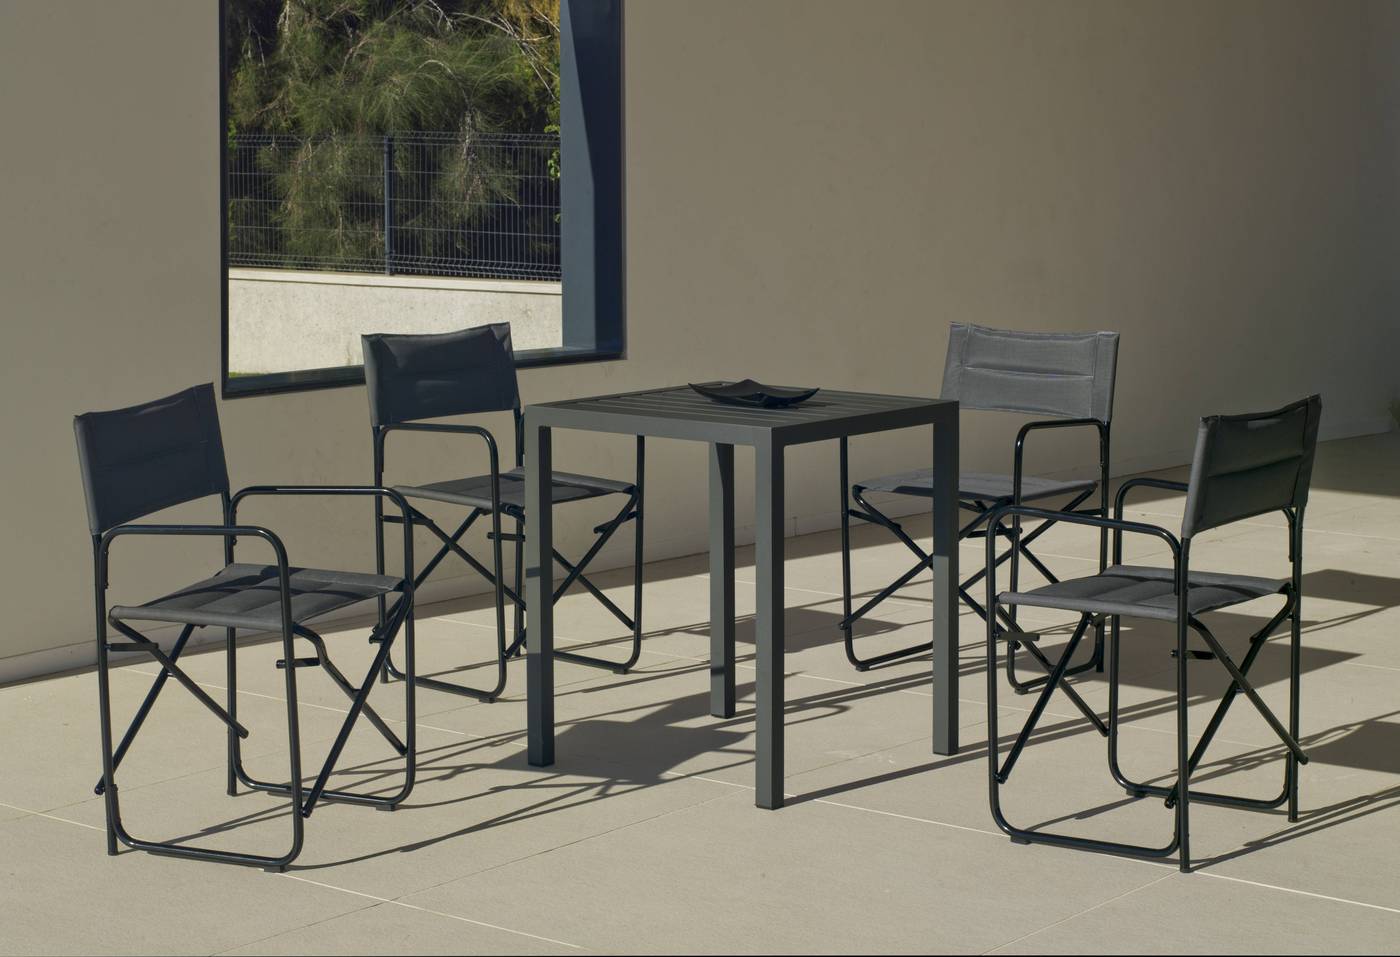 Conjunto aluminio luxe: Mesa cuadrada 65 cm + 4 sillones plegables. Disponible en color blanco o antracita.